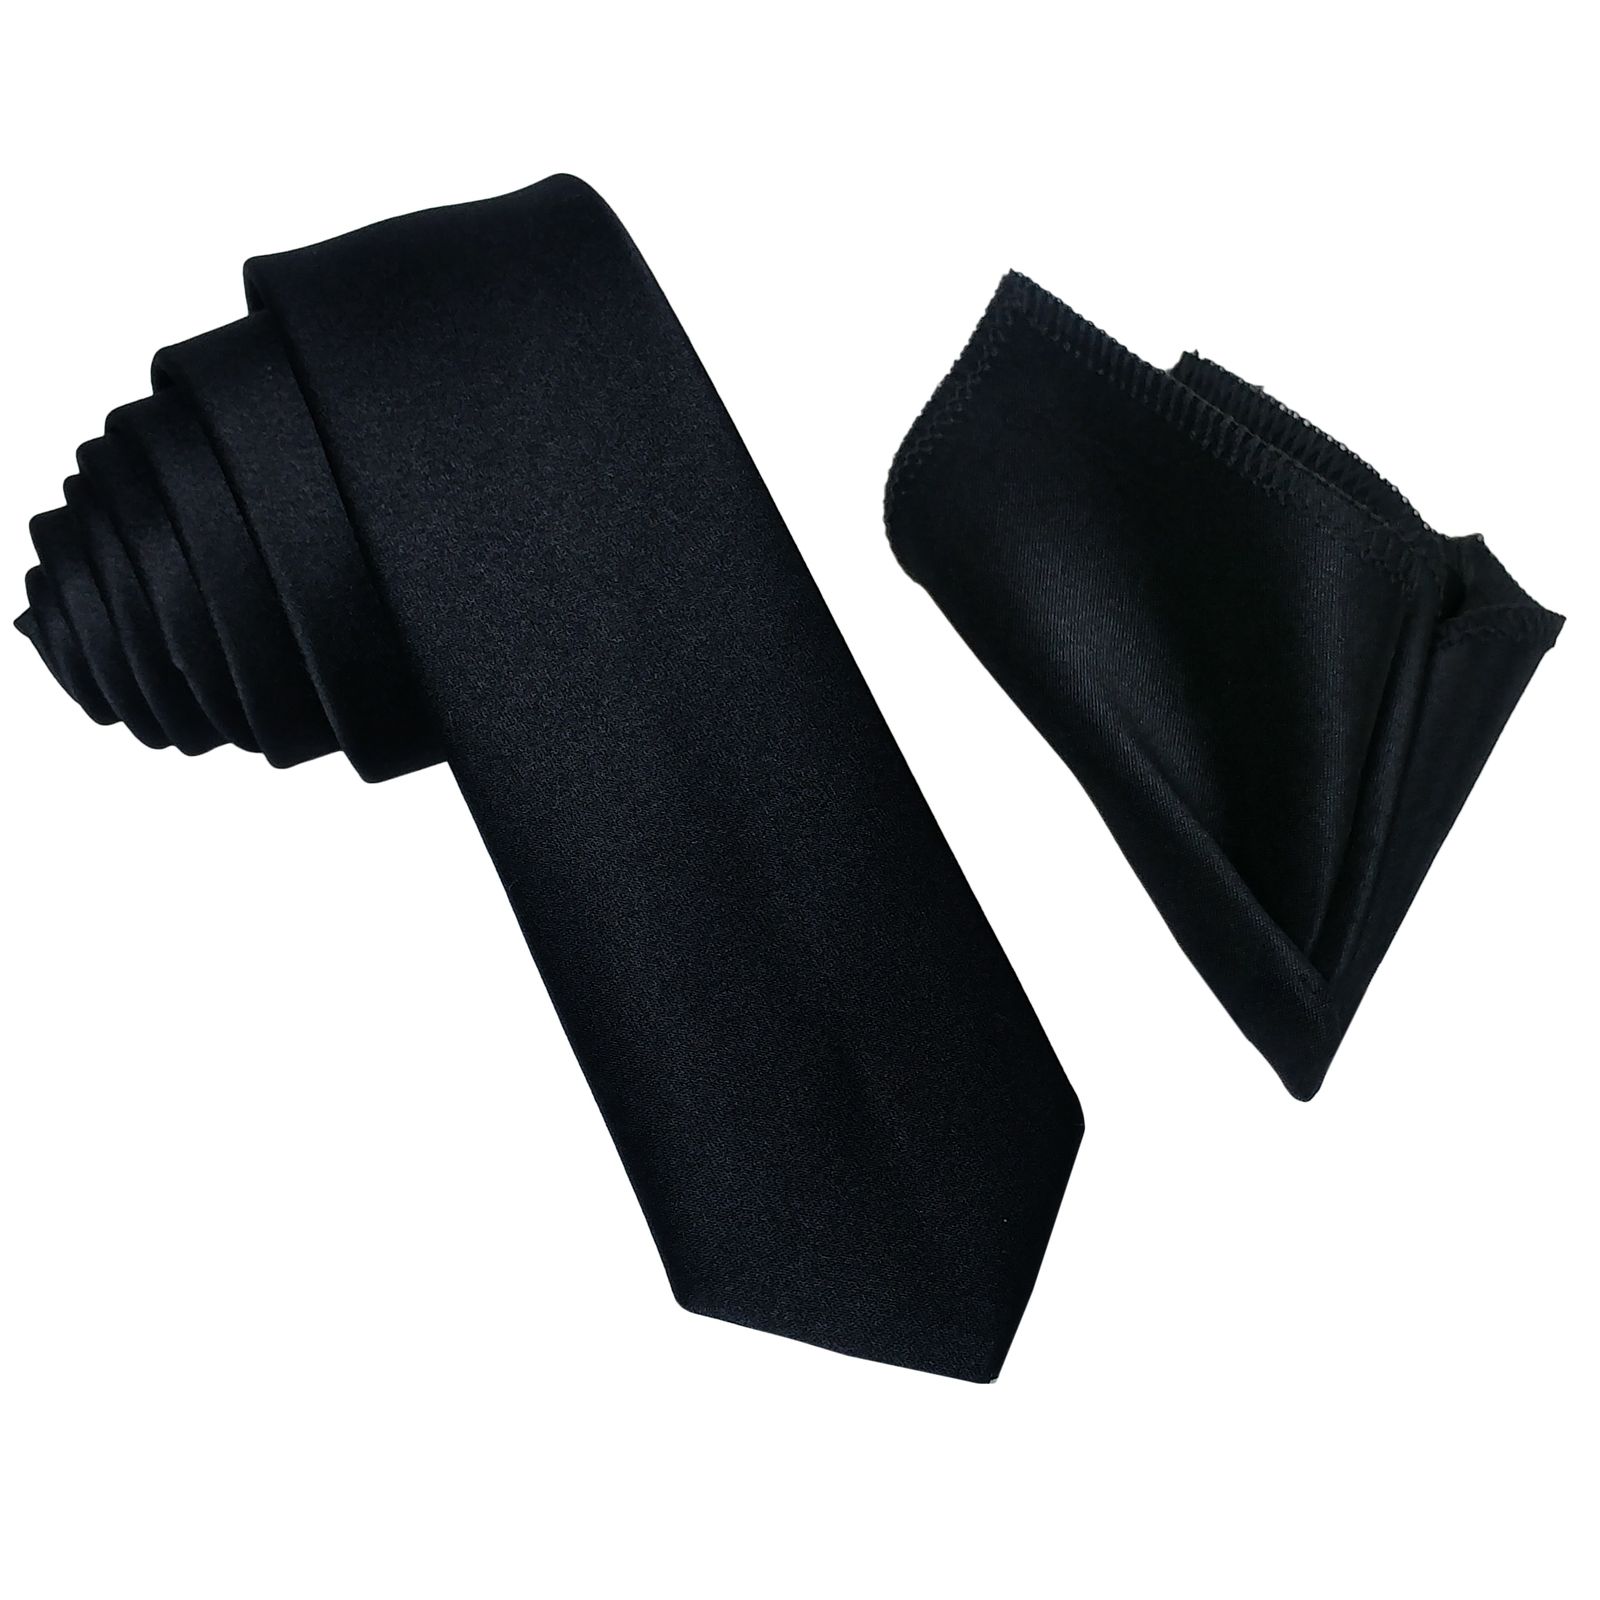  ست کراوات و پاپیون و دستمال جیب مردانه کد B3 -  - 4